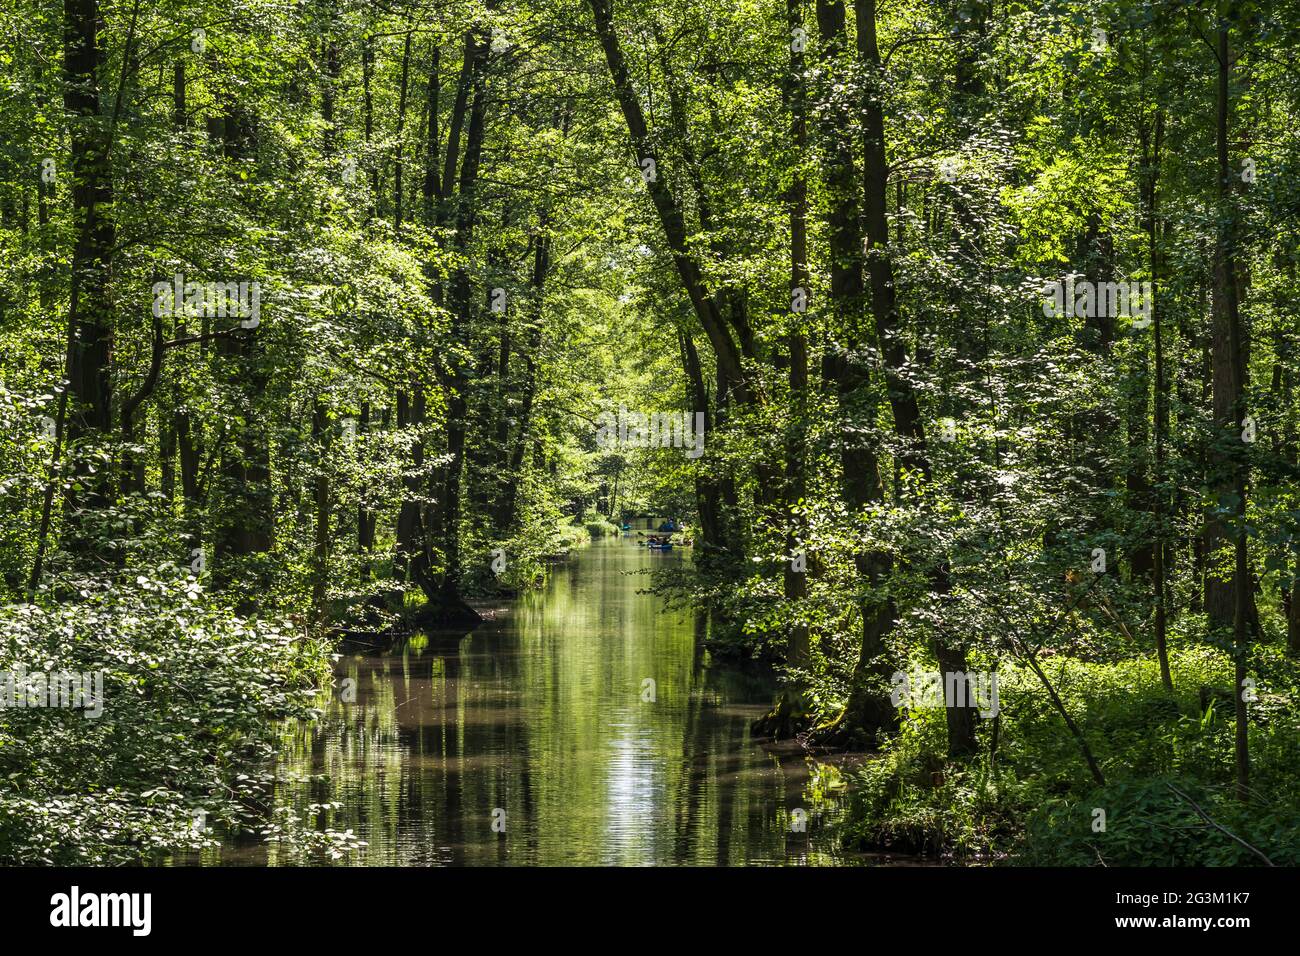 Canal d'eau dans la réserve de biosphère de la forêt de Spree (Spreewald) dans l'État de Brandebourg, en Allemagne, au printemps. Banque D'Images